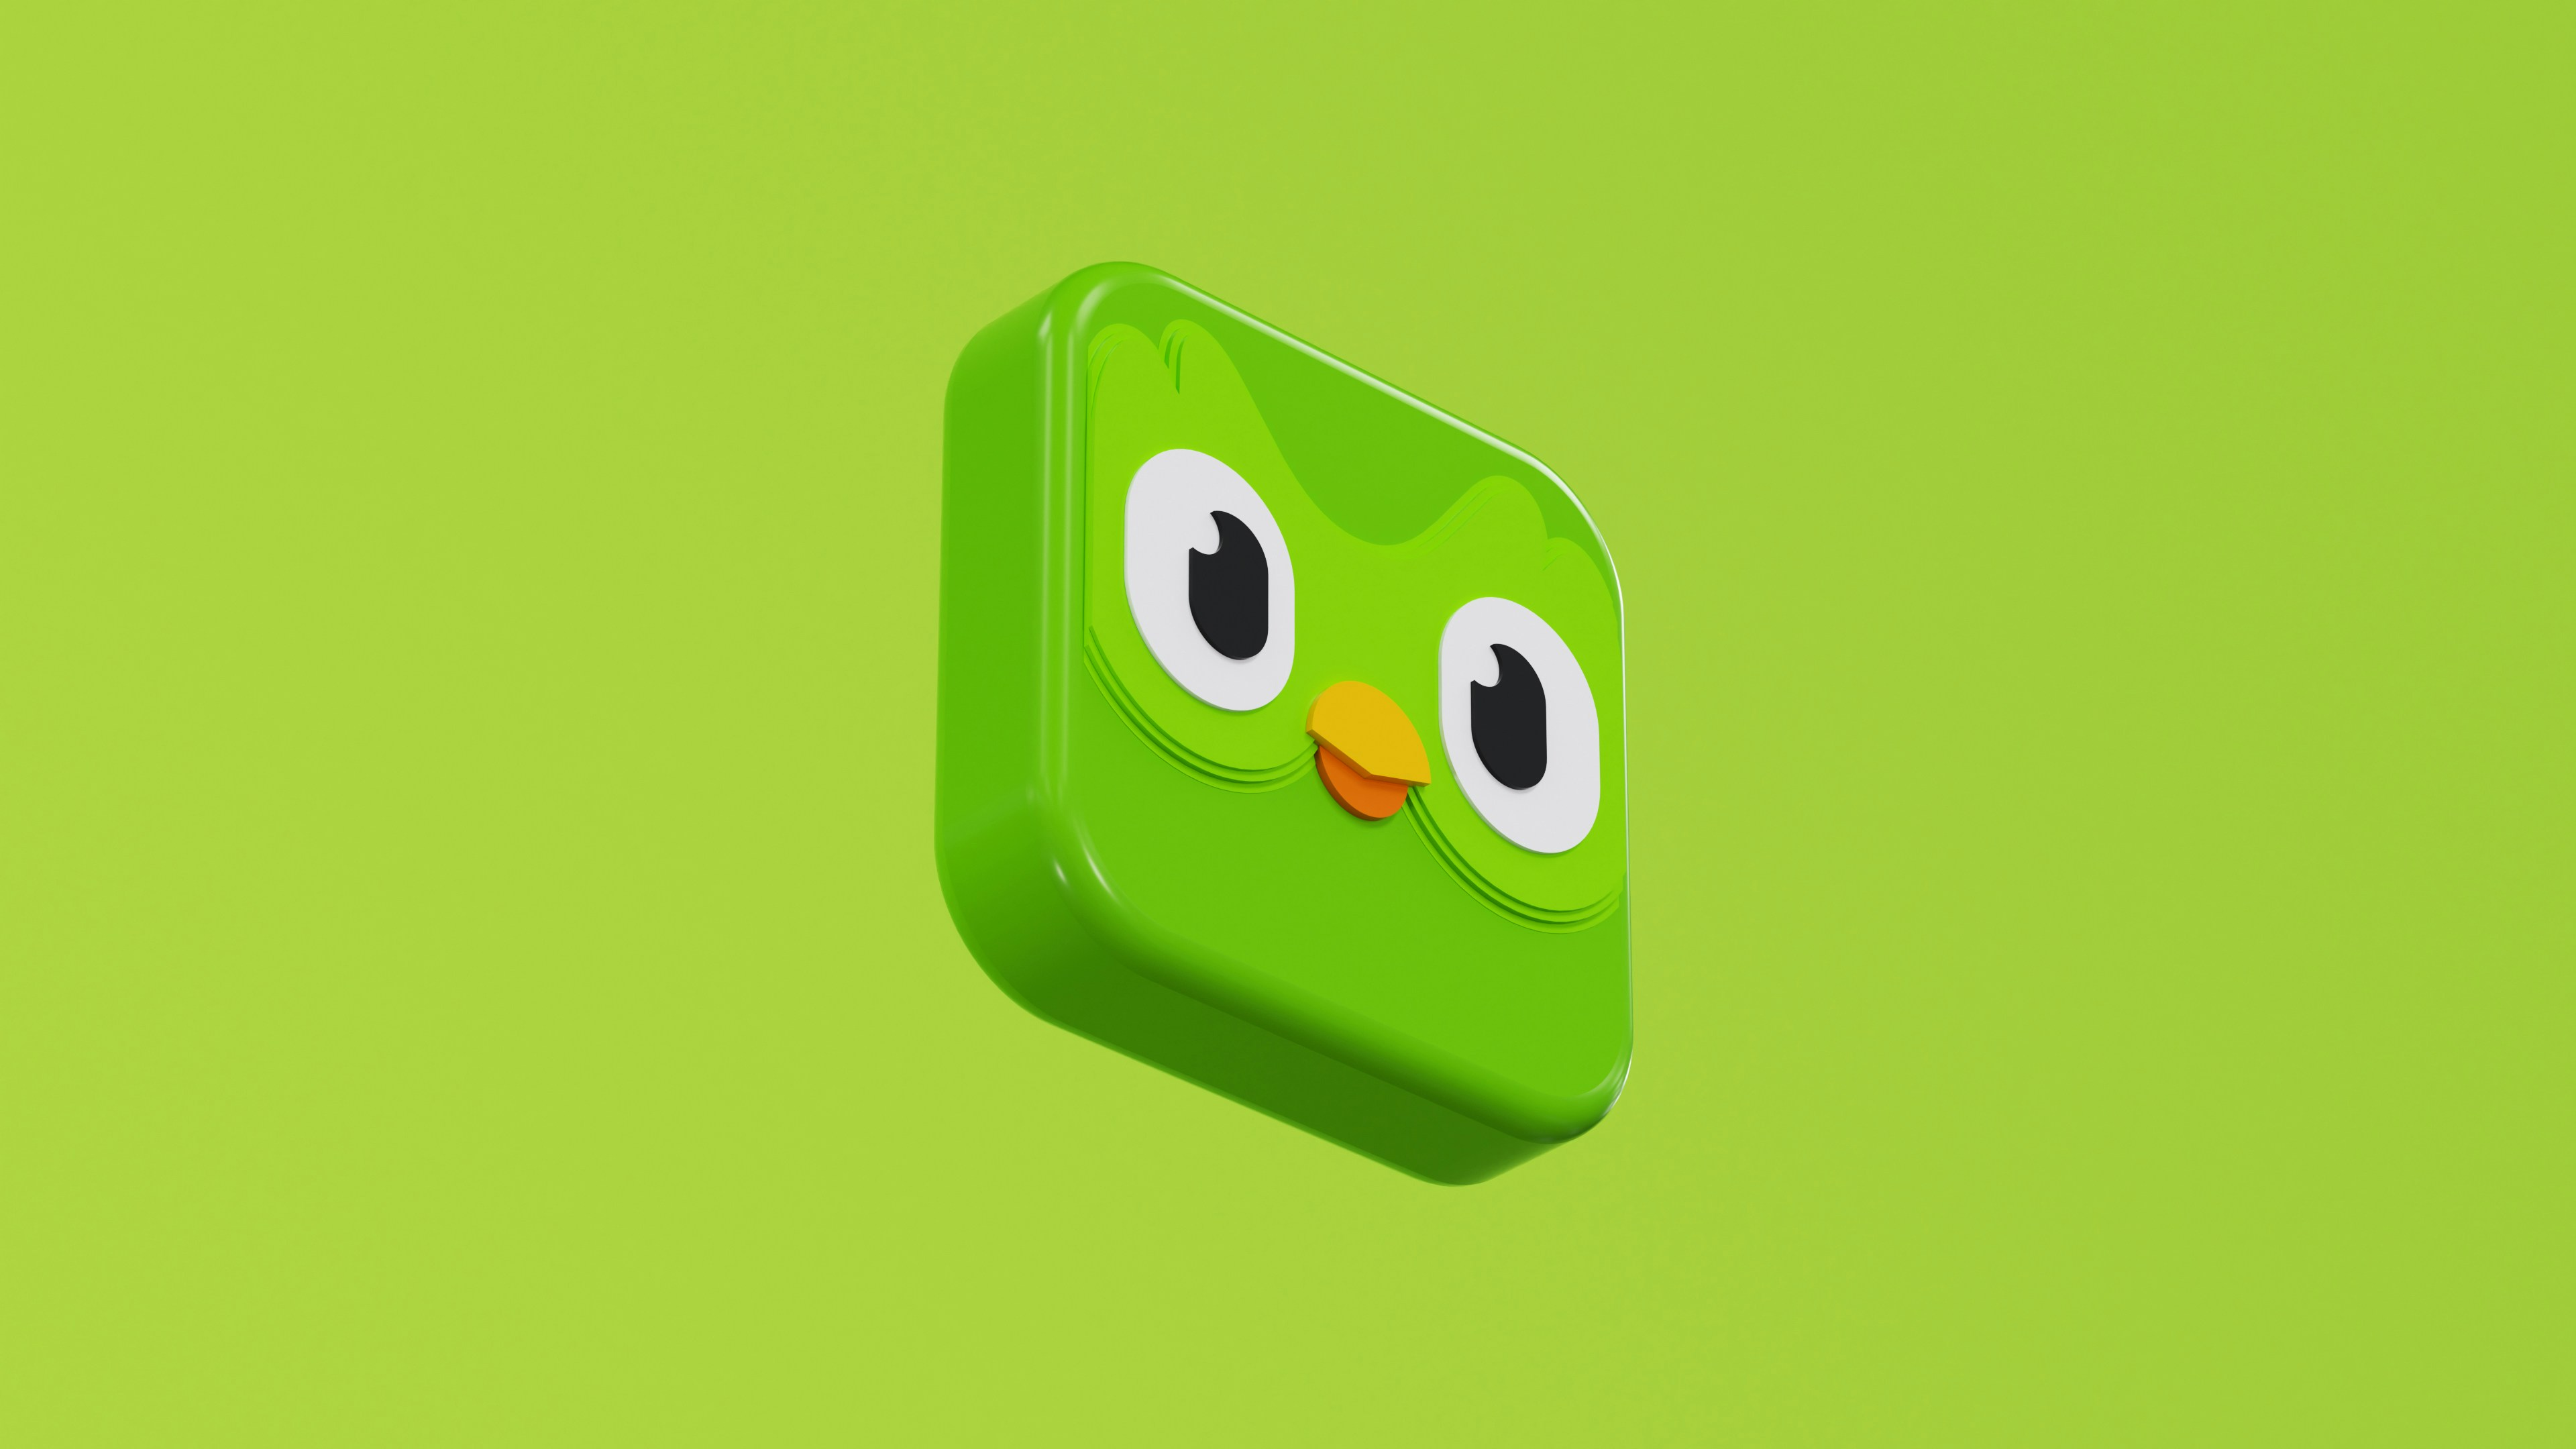 Duolingo's mascot